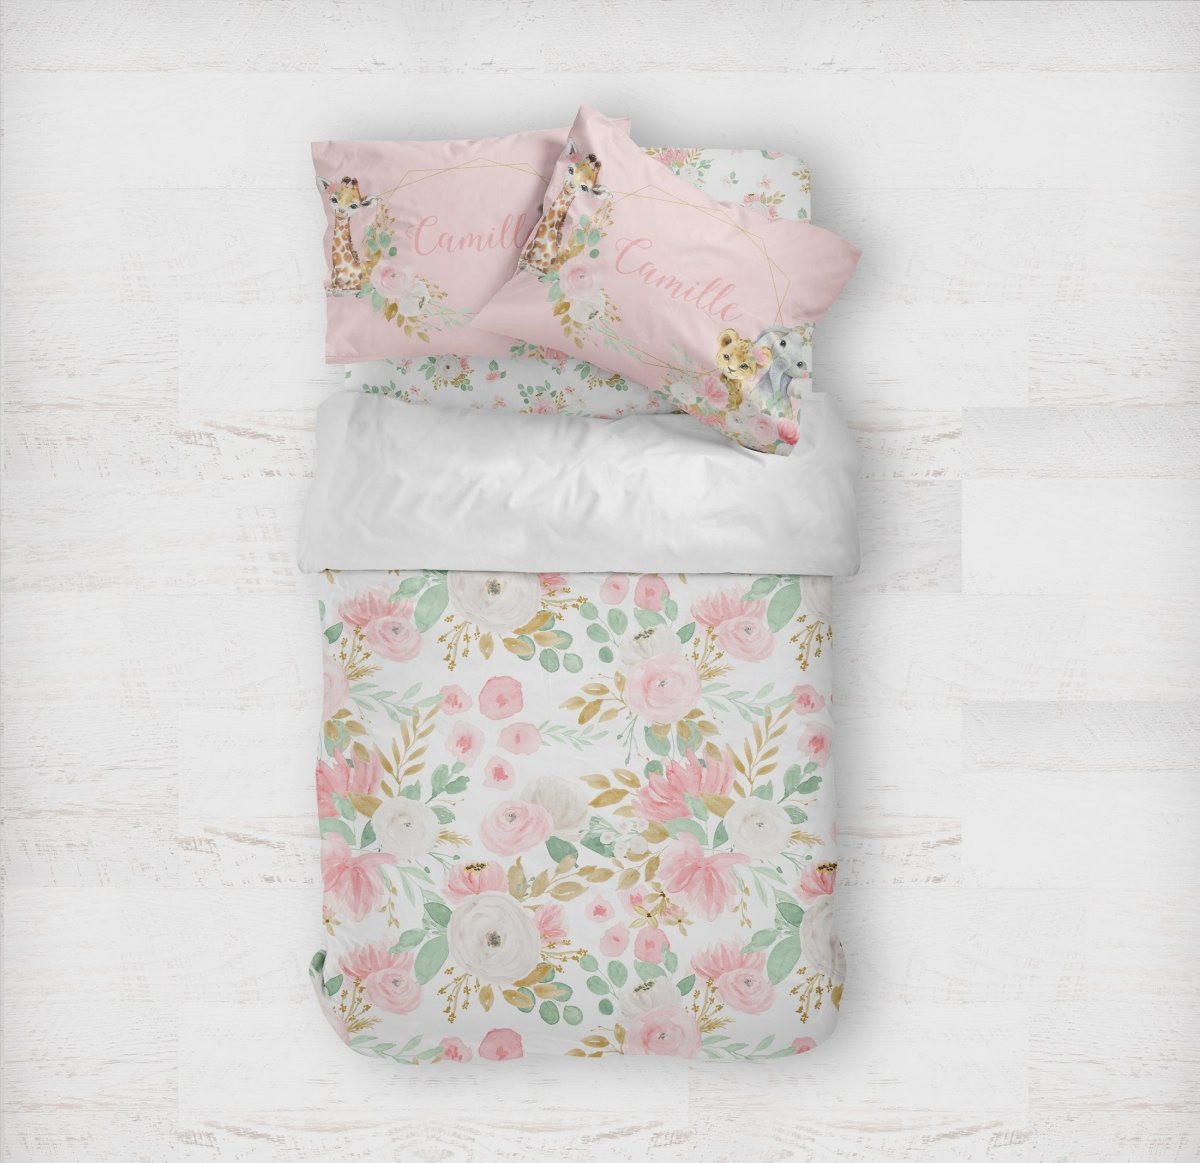 Floral Jungle Kids Bedding Set (Comforter or Duvet Cover) - Floral Jungle, gender_girl, text